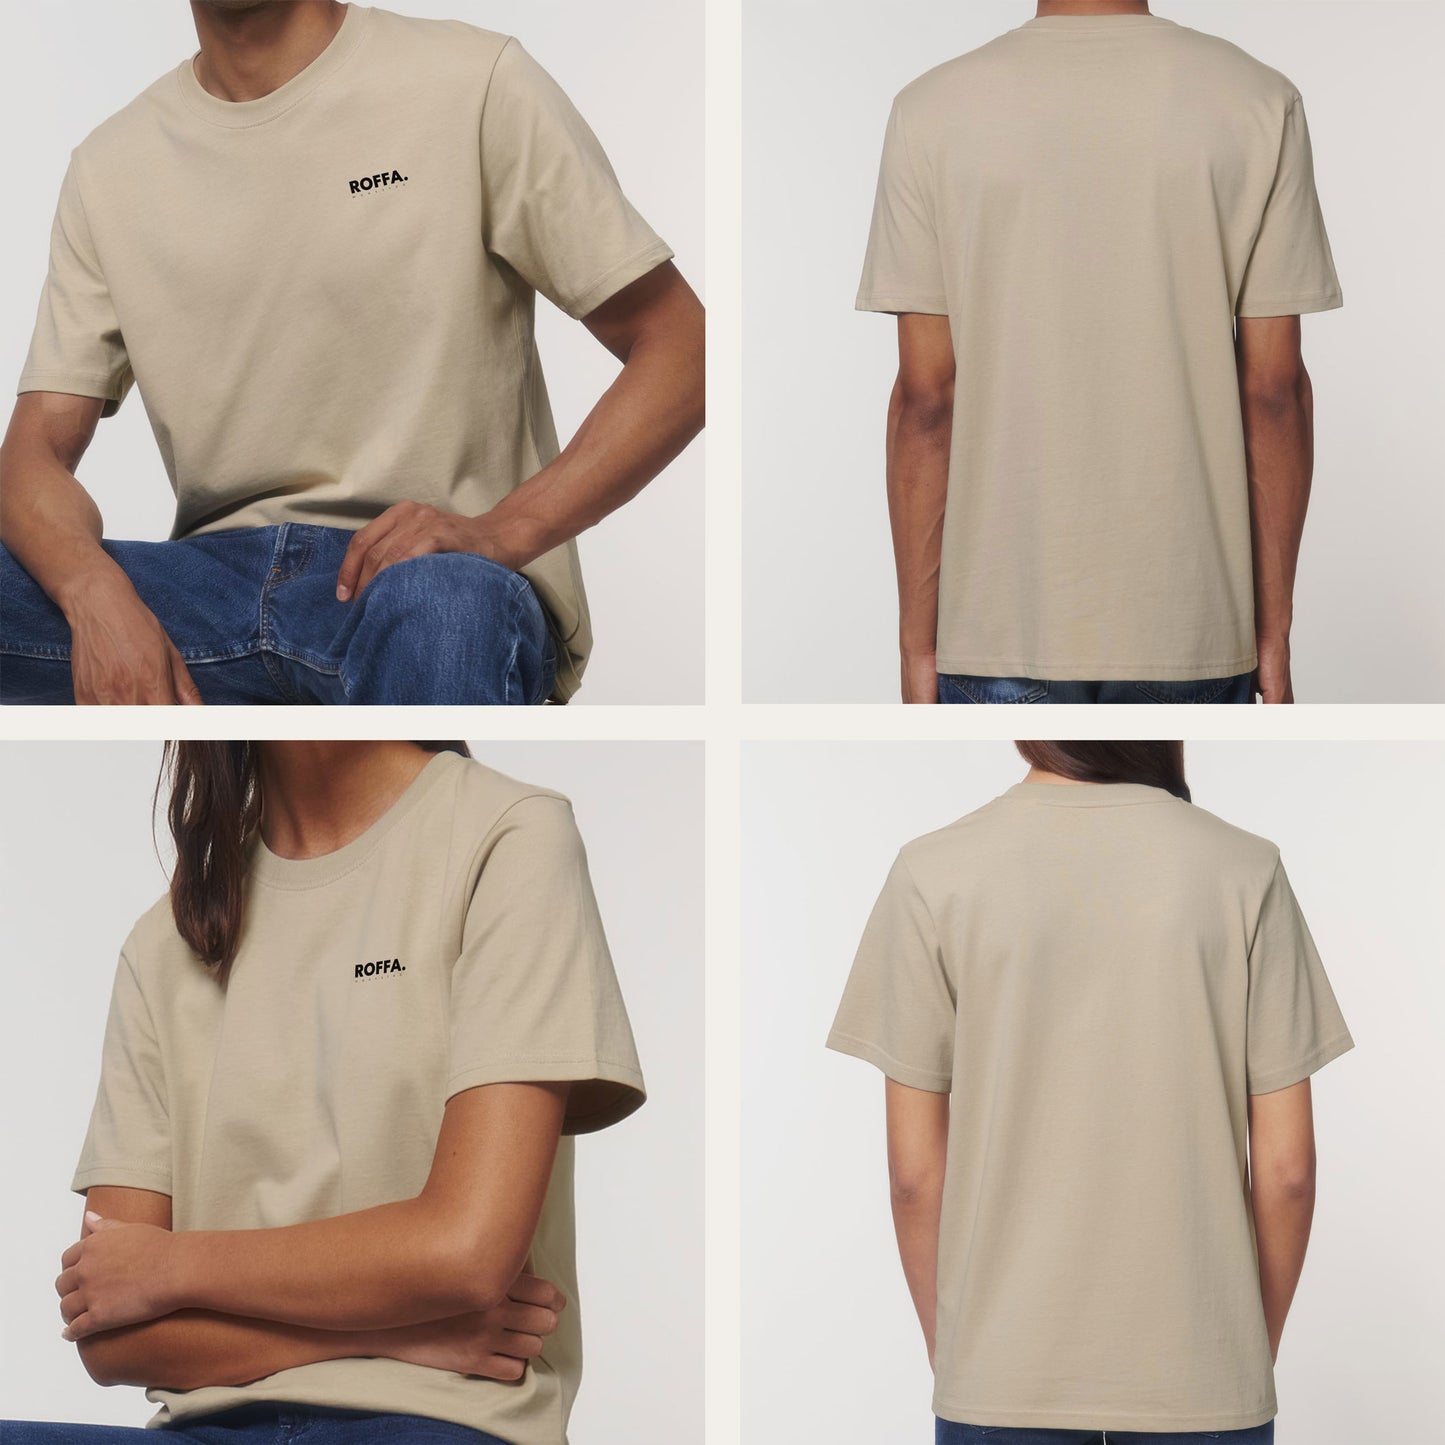 ROFFA. t-shirt regular - 100% organisch katoen - logo links